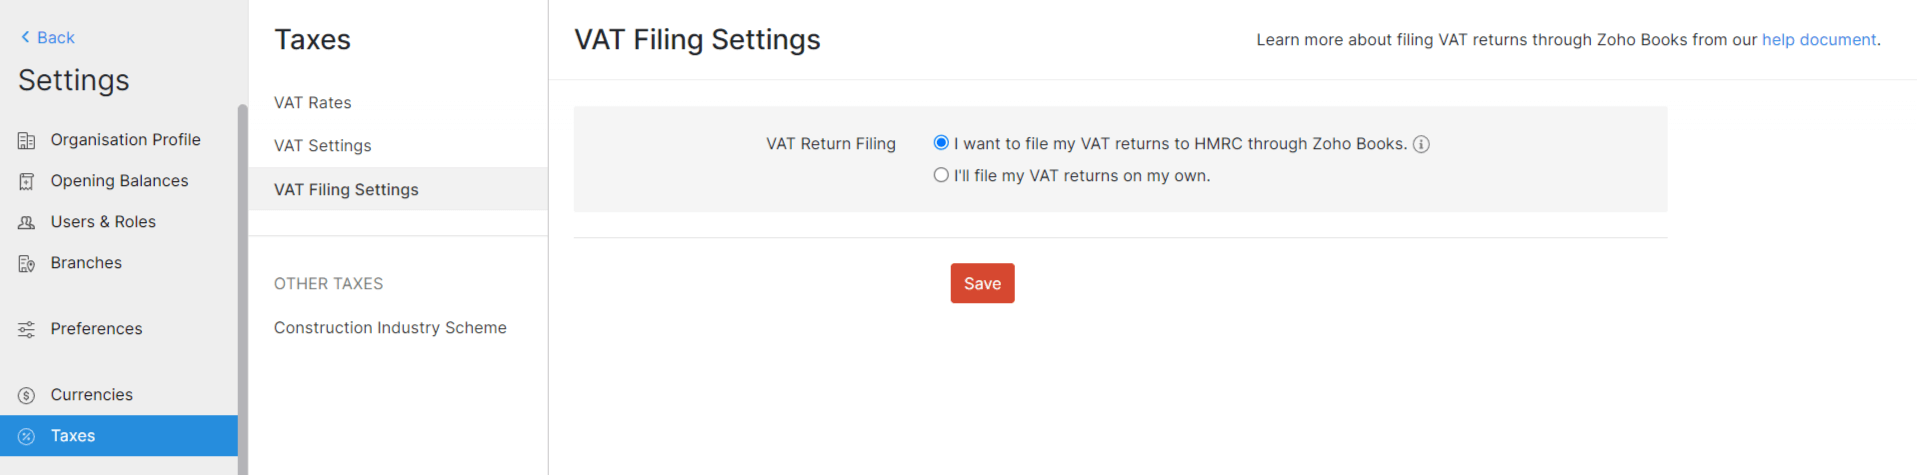 File your VAT return online using Zoho Books